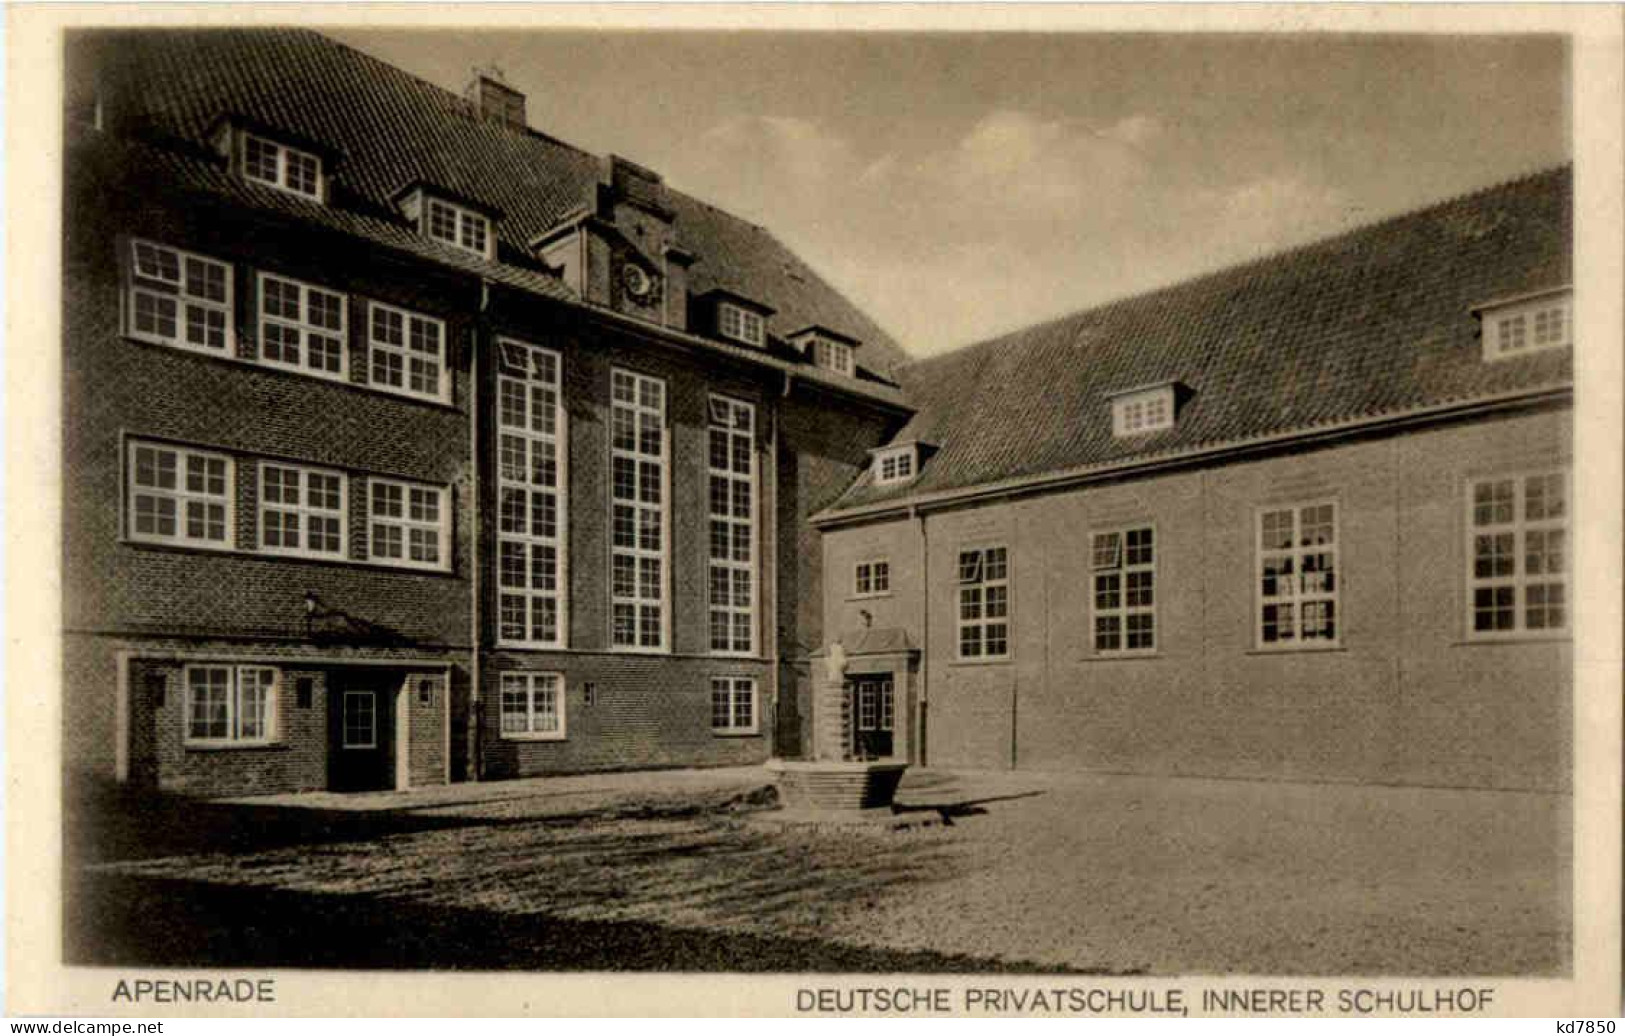 Apenrade - Deutsche Privatschule - Danemark